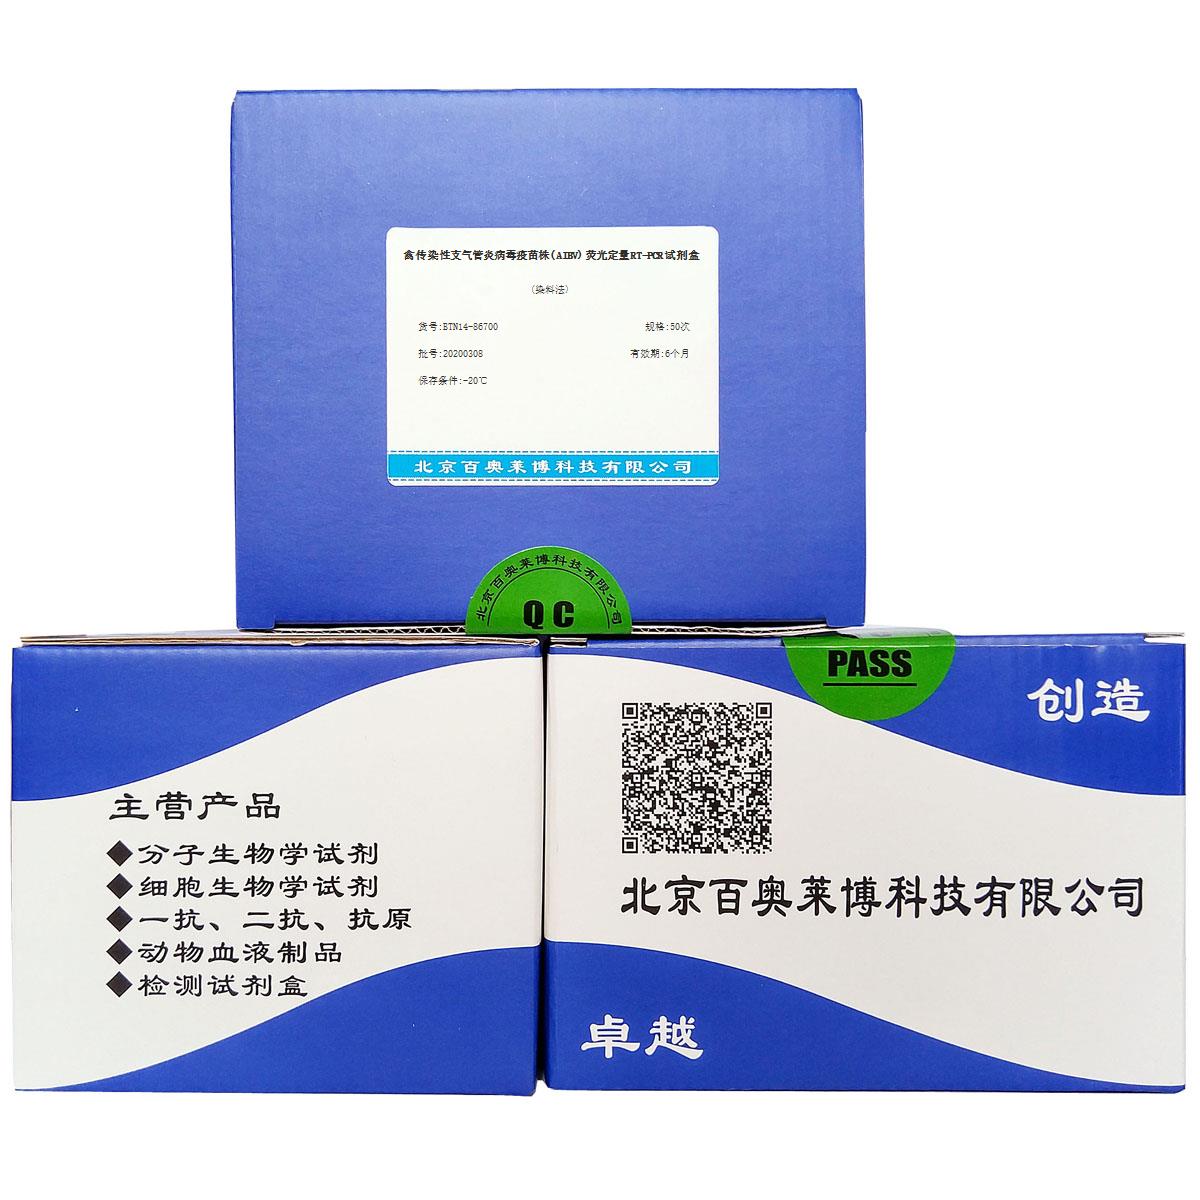 禽传染性支气管炎病毒疫苗株(AIBV)荧光定量RT-PCR试剂盒(染料法)